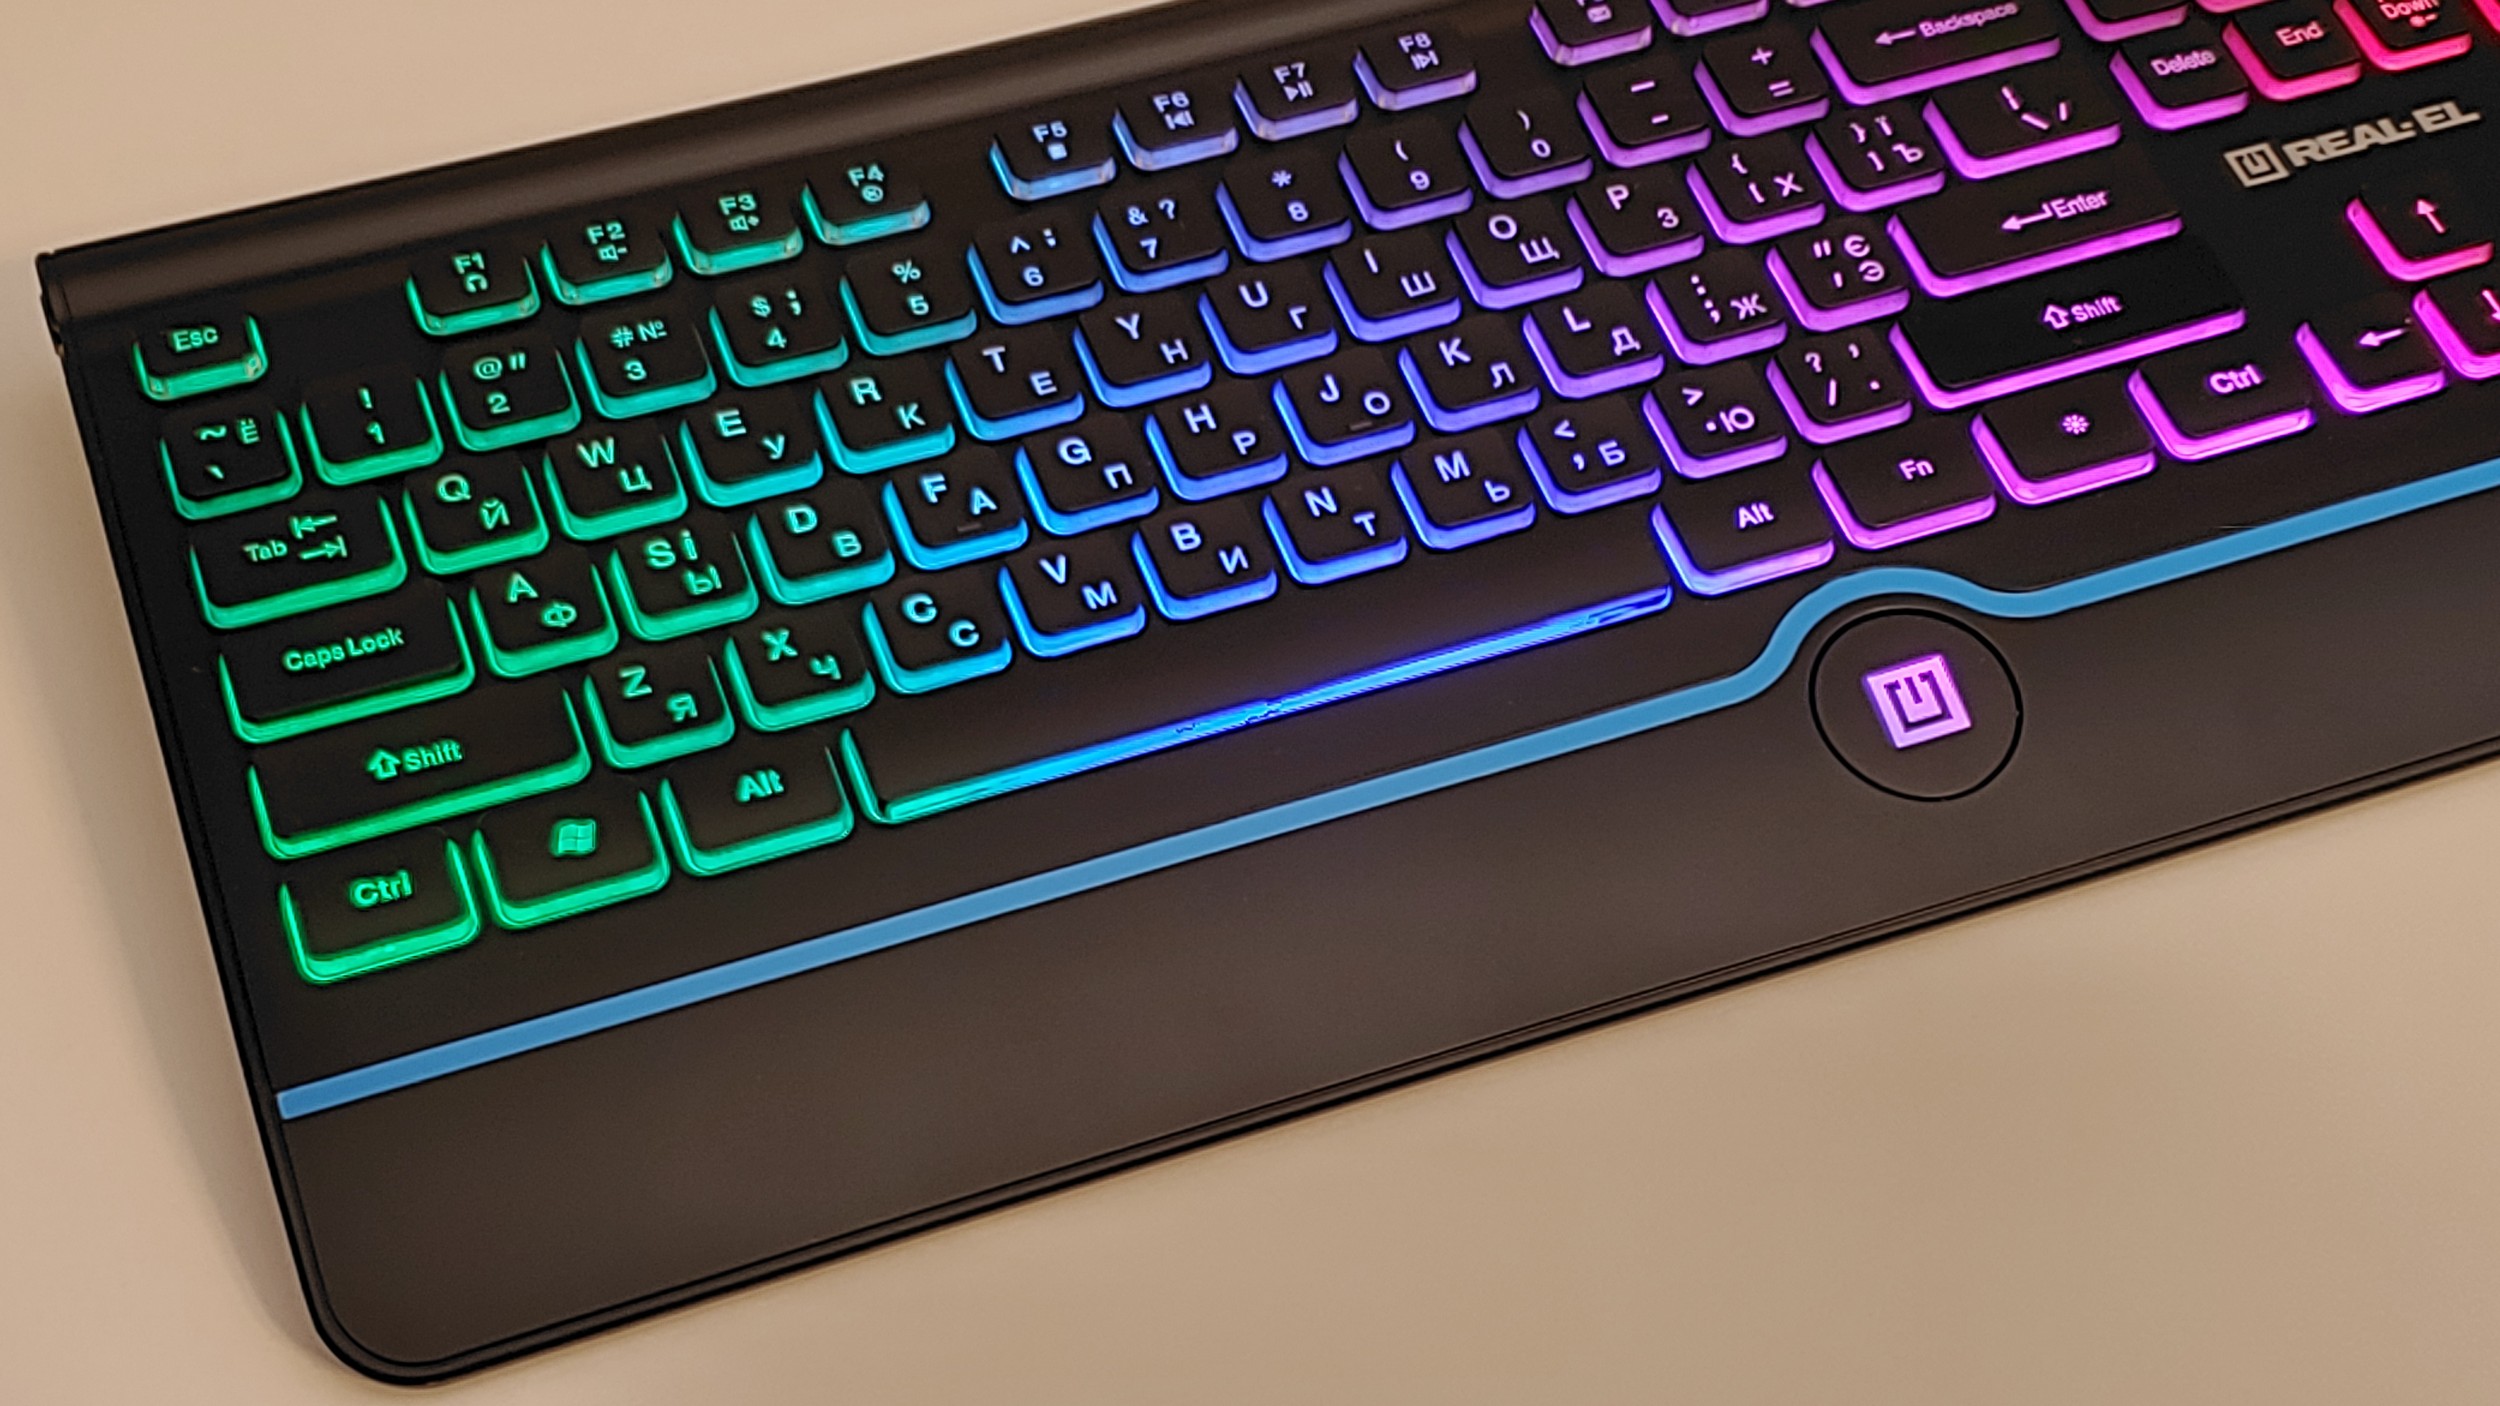 Фото подсветки клавиатуры REAL-EL Comfort 8000 Backlit